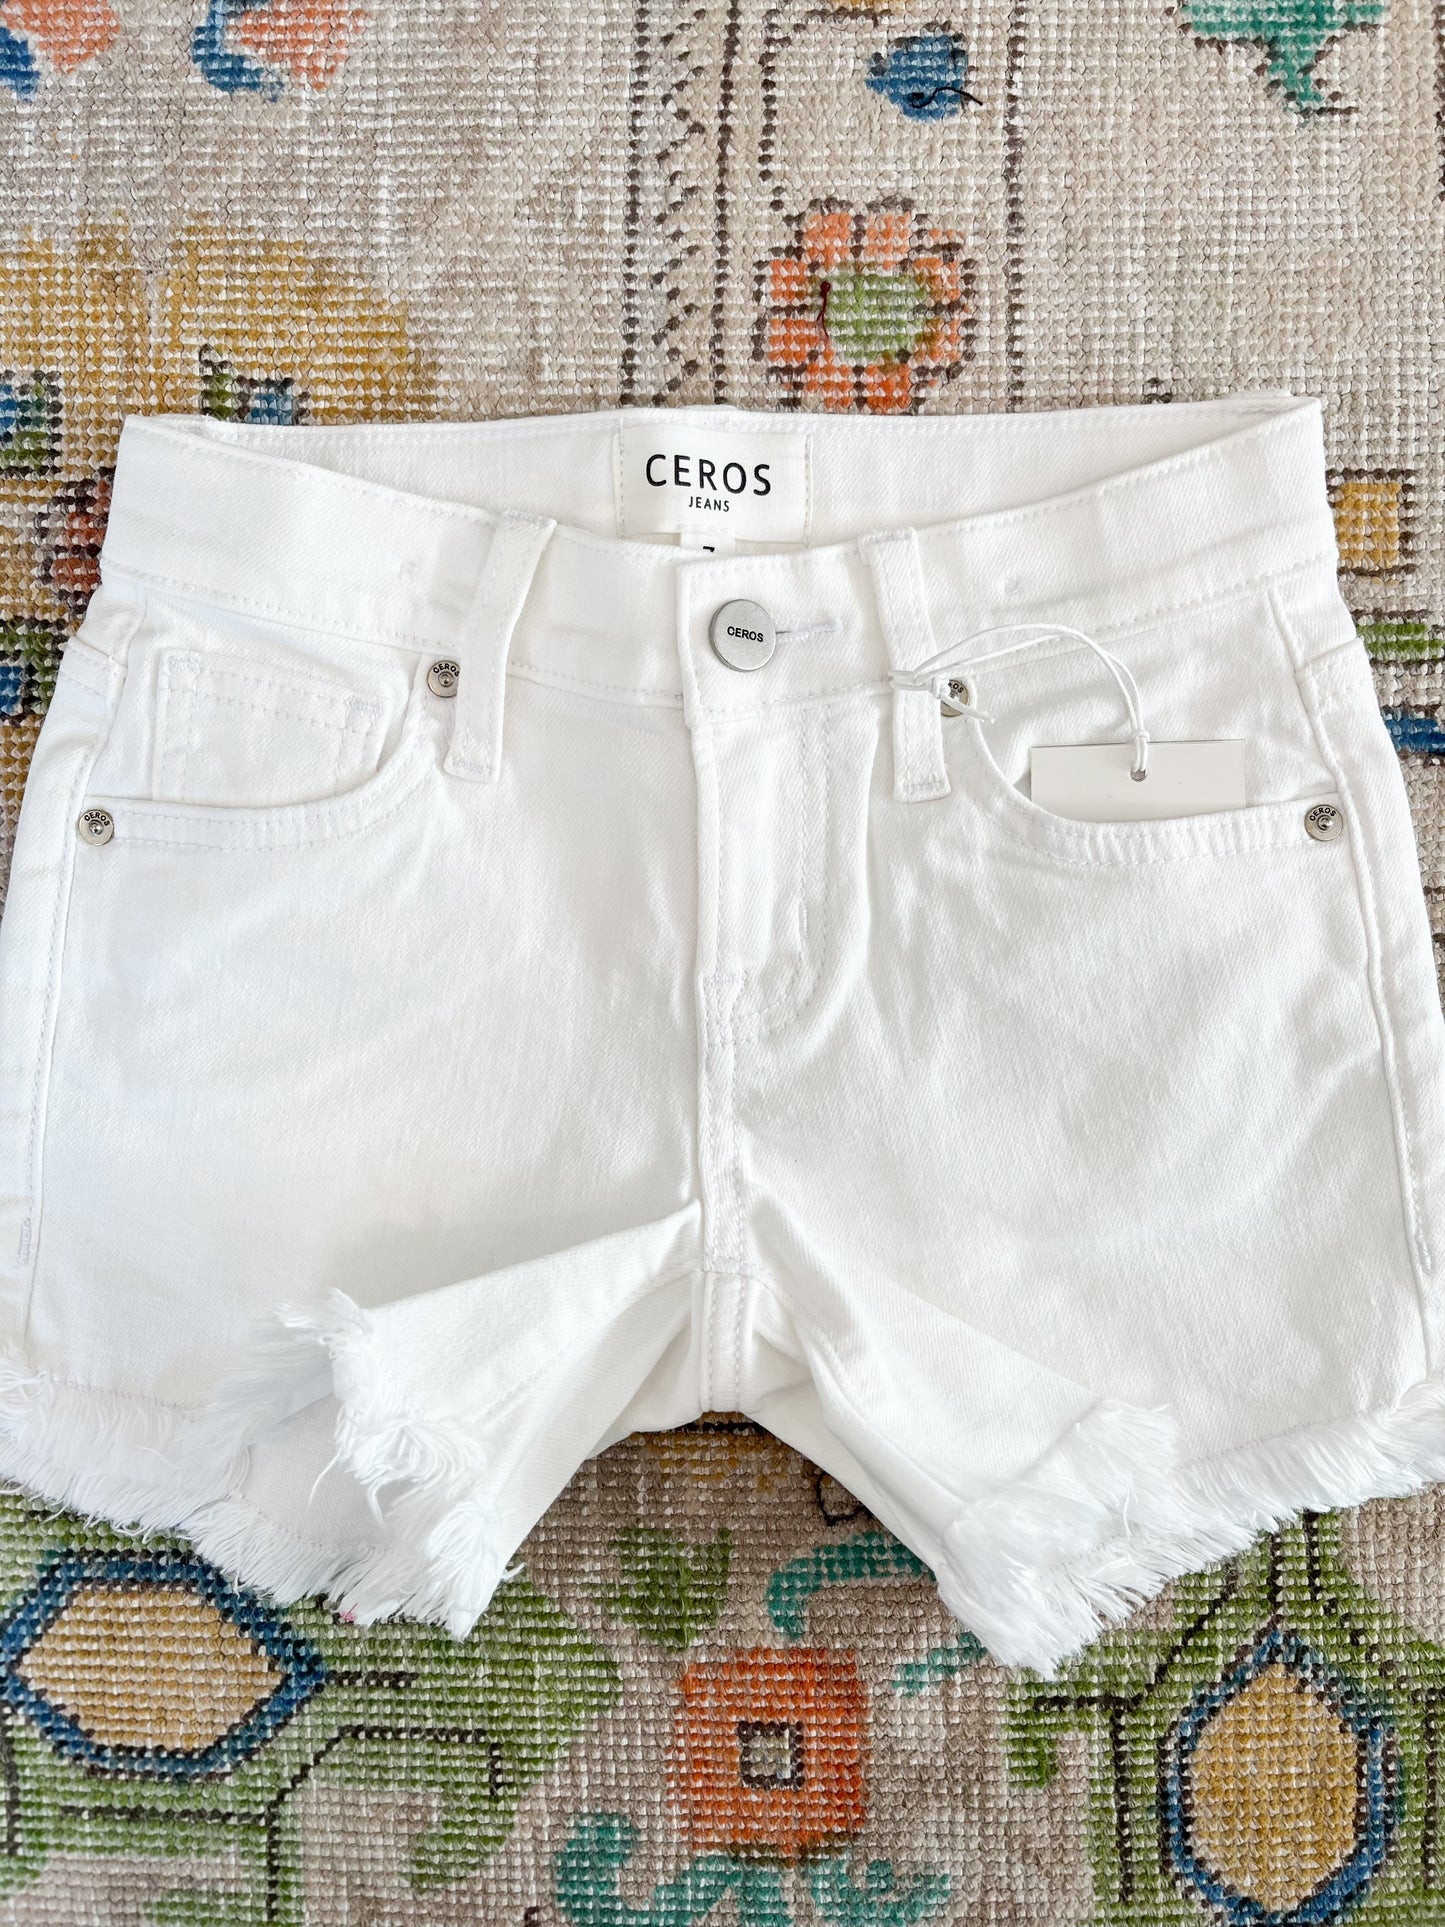 White Jean Shorts - Magpies Paducah